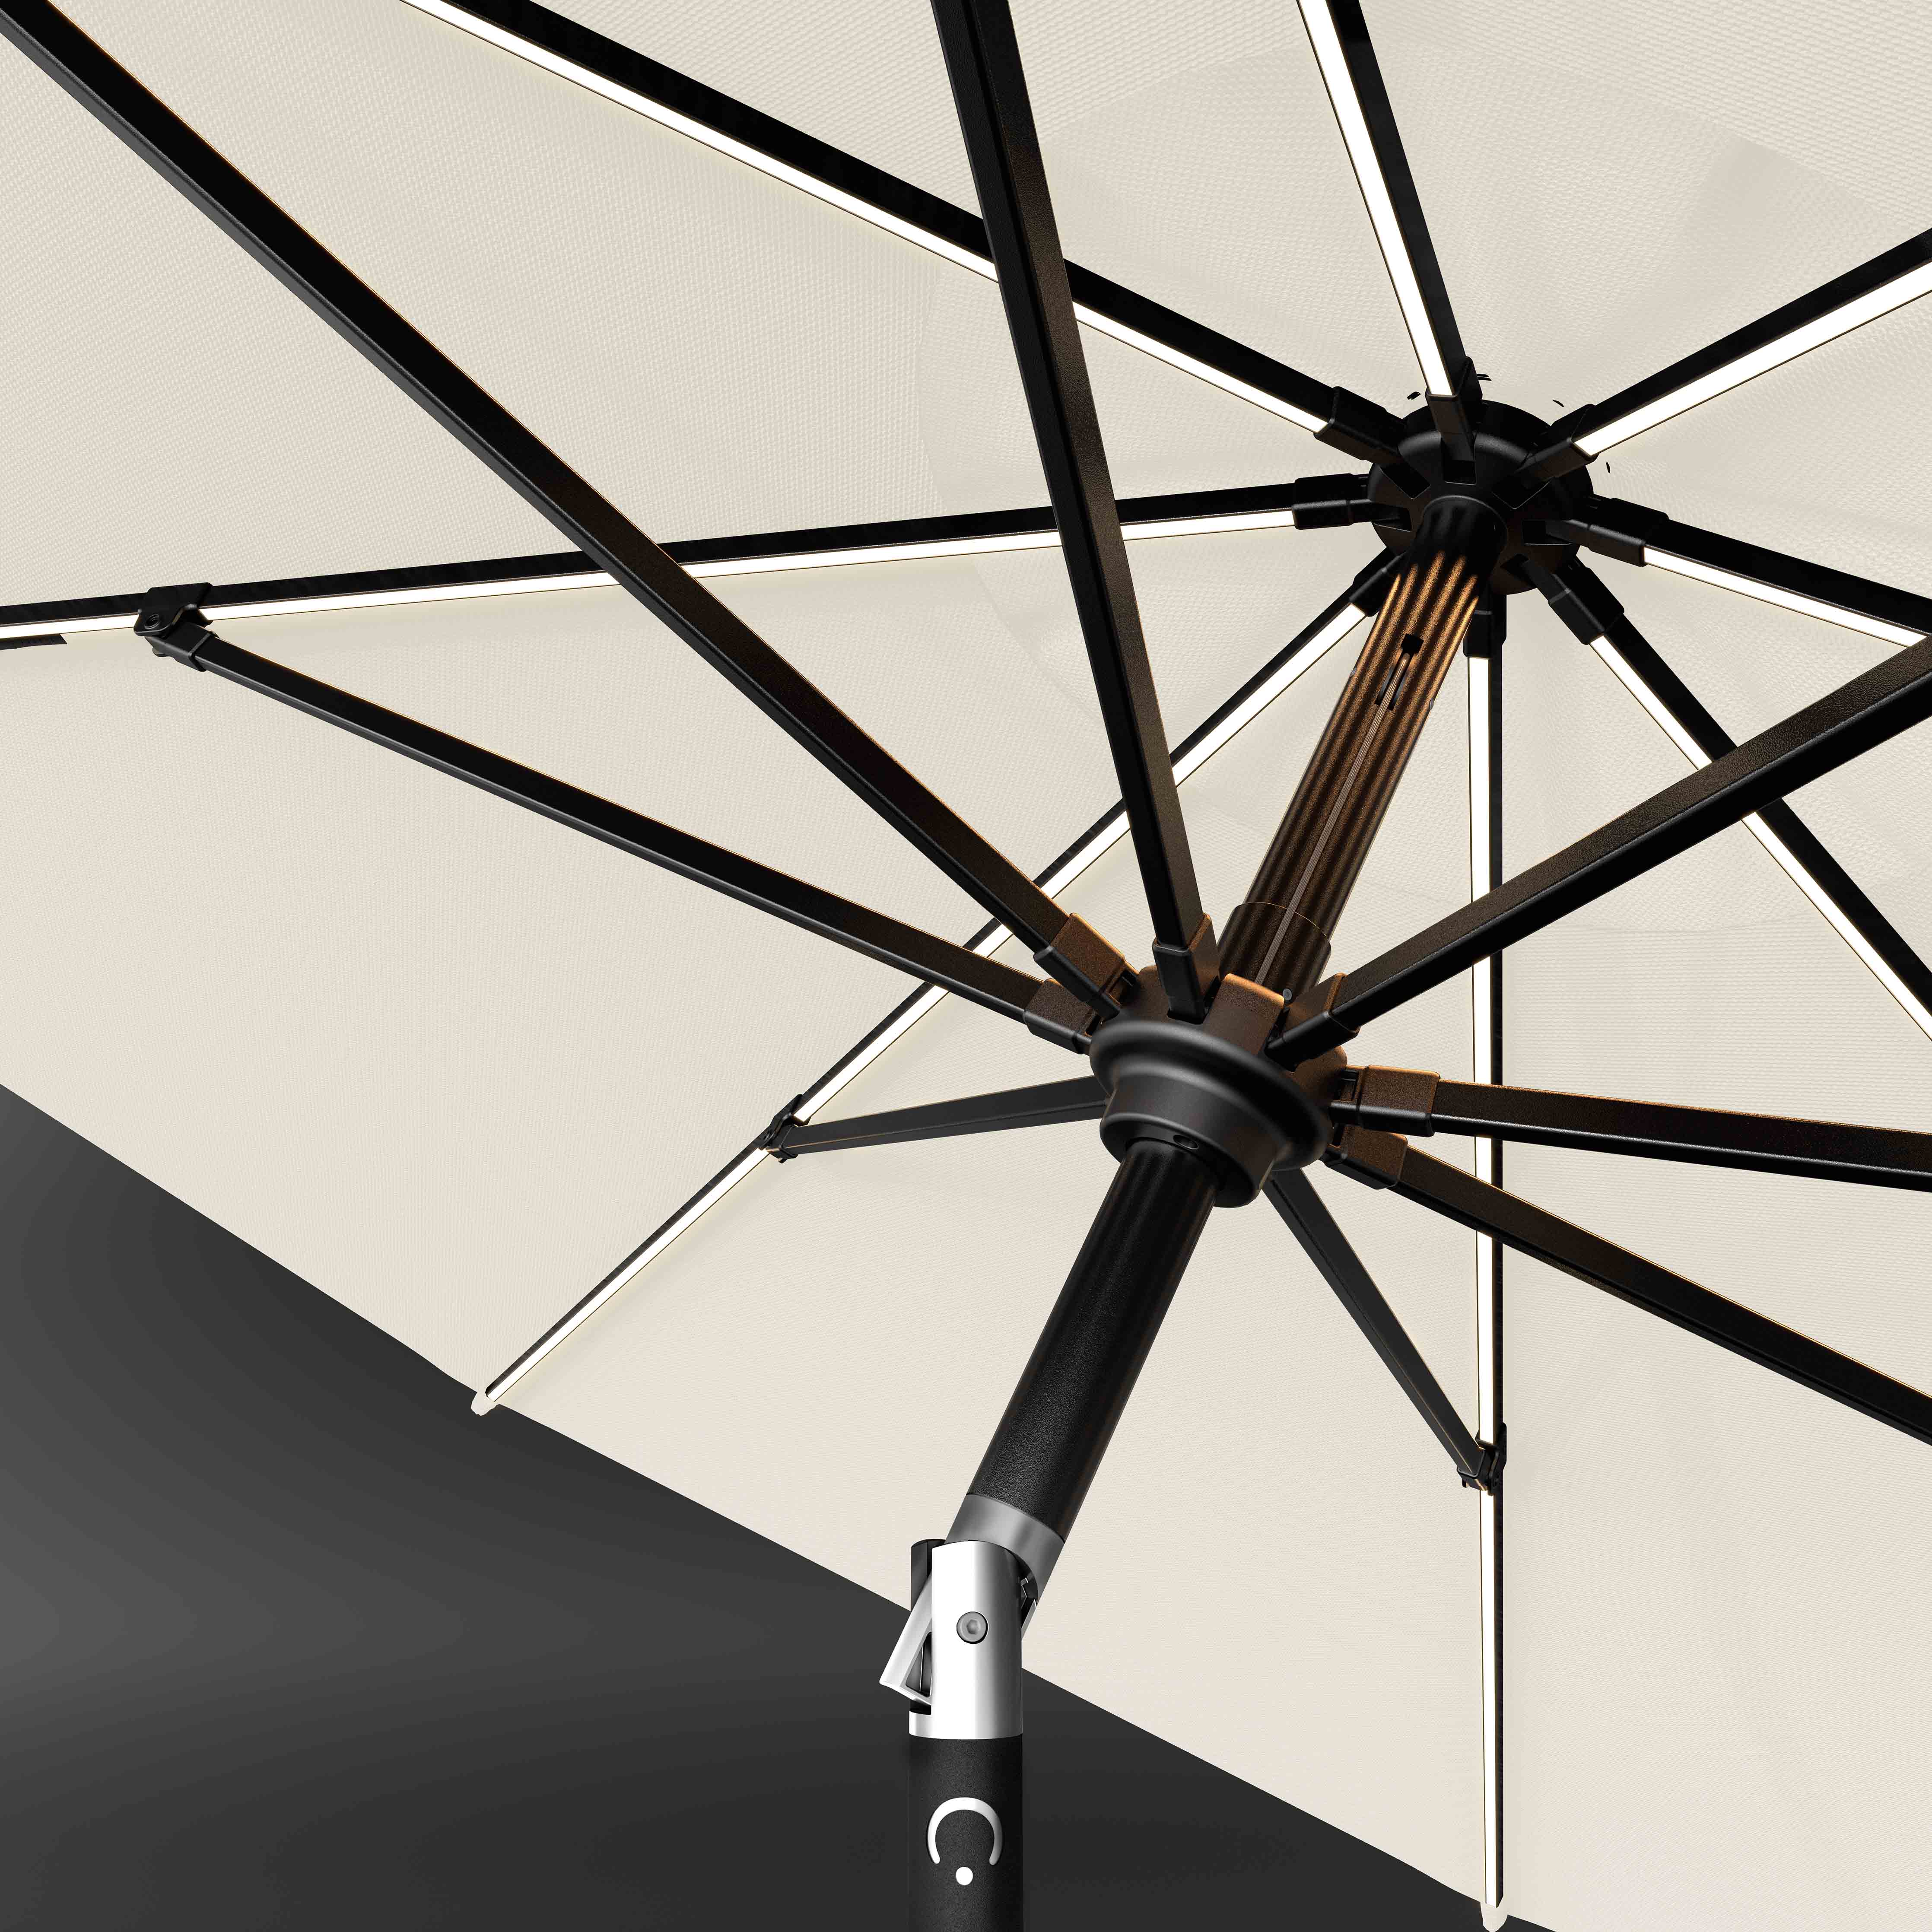 The LED Swilt™ - Sunbrella White